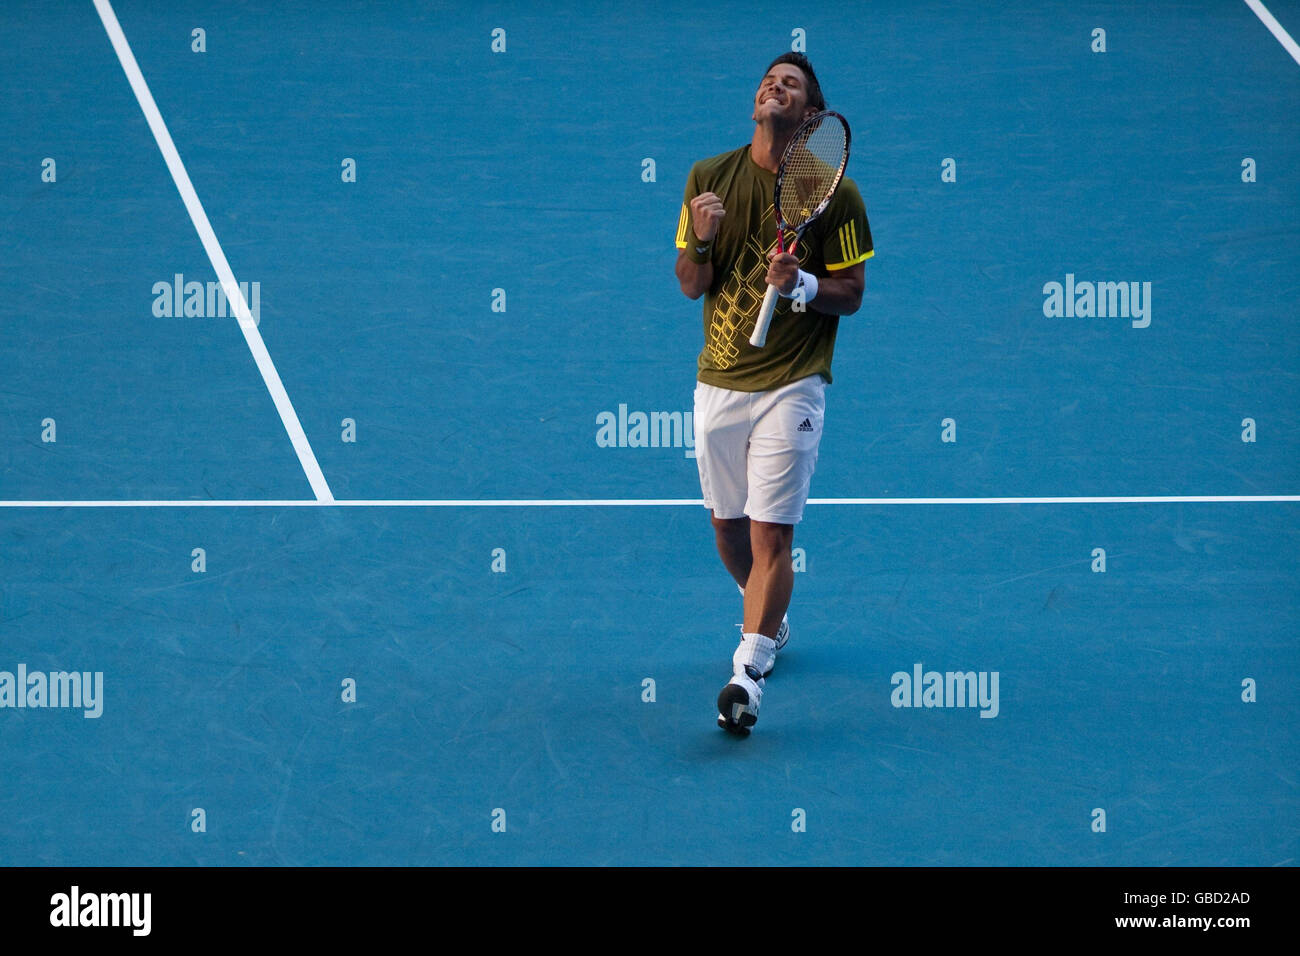 Der spanische Fernando Verdasco feiert den Sieg des britischen Andy Murray bei den Australian Open 2009 im Melbourne Park, Melbourne, Australien. Stockfoto